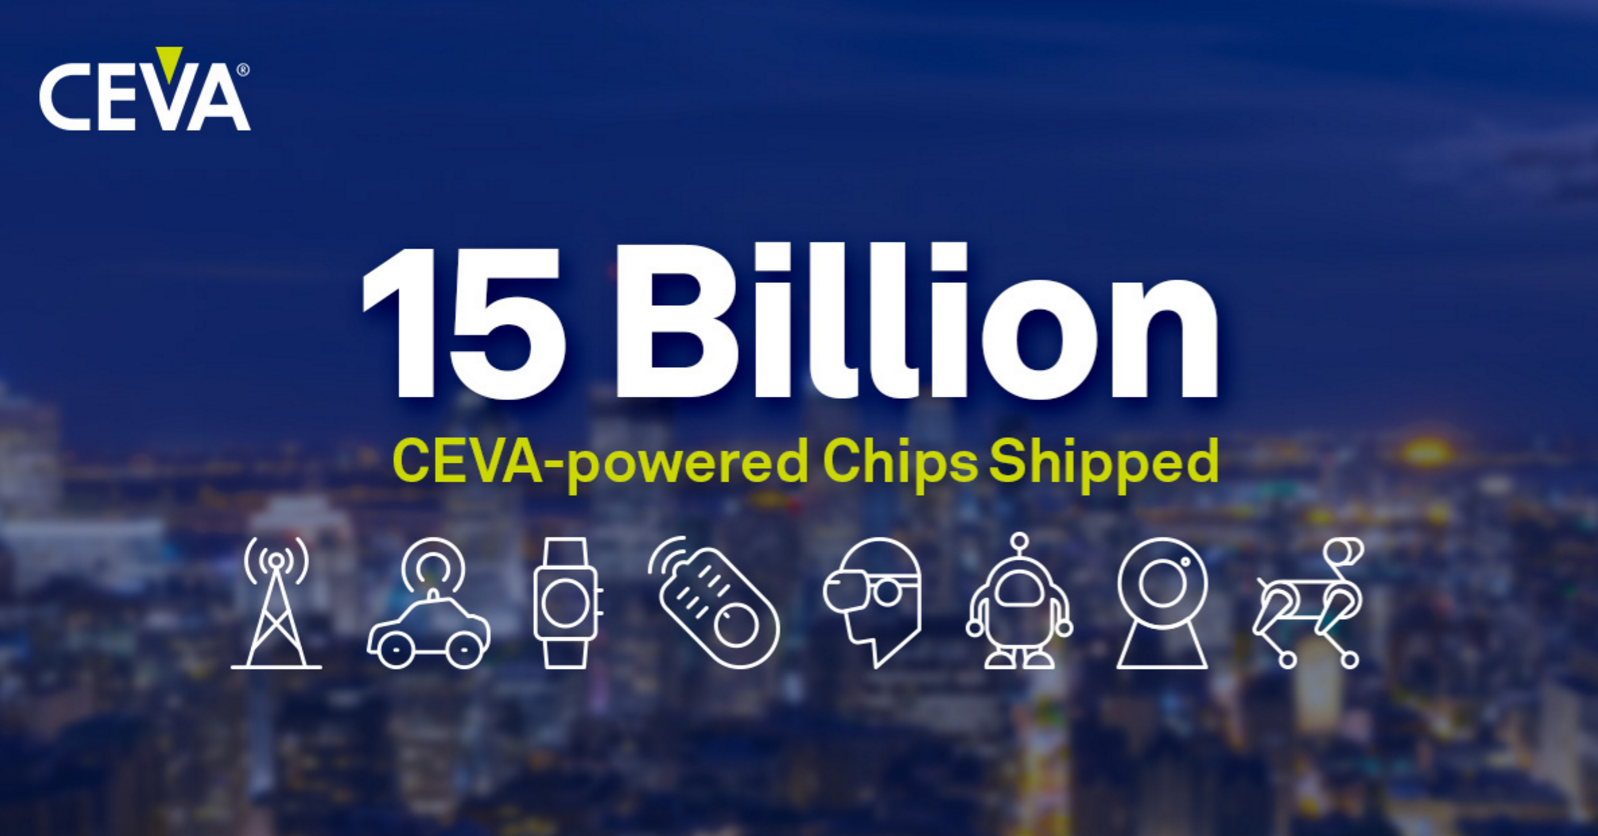 第 150 亿颗CEVA 助力芯片出货